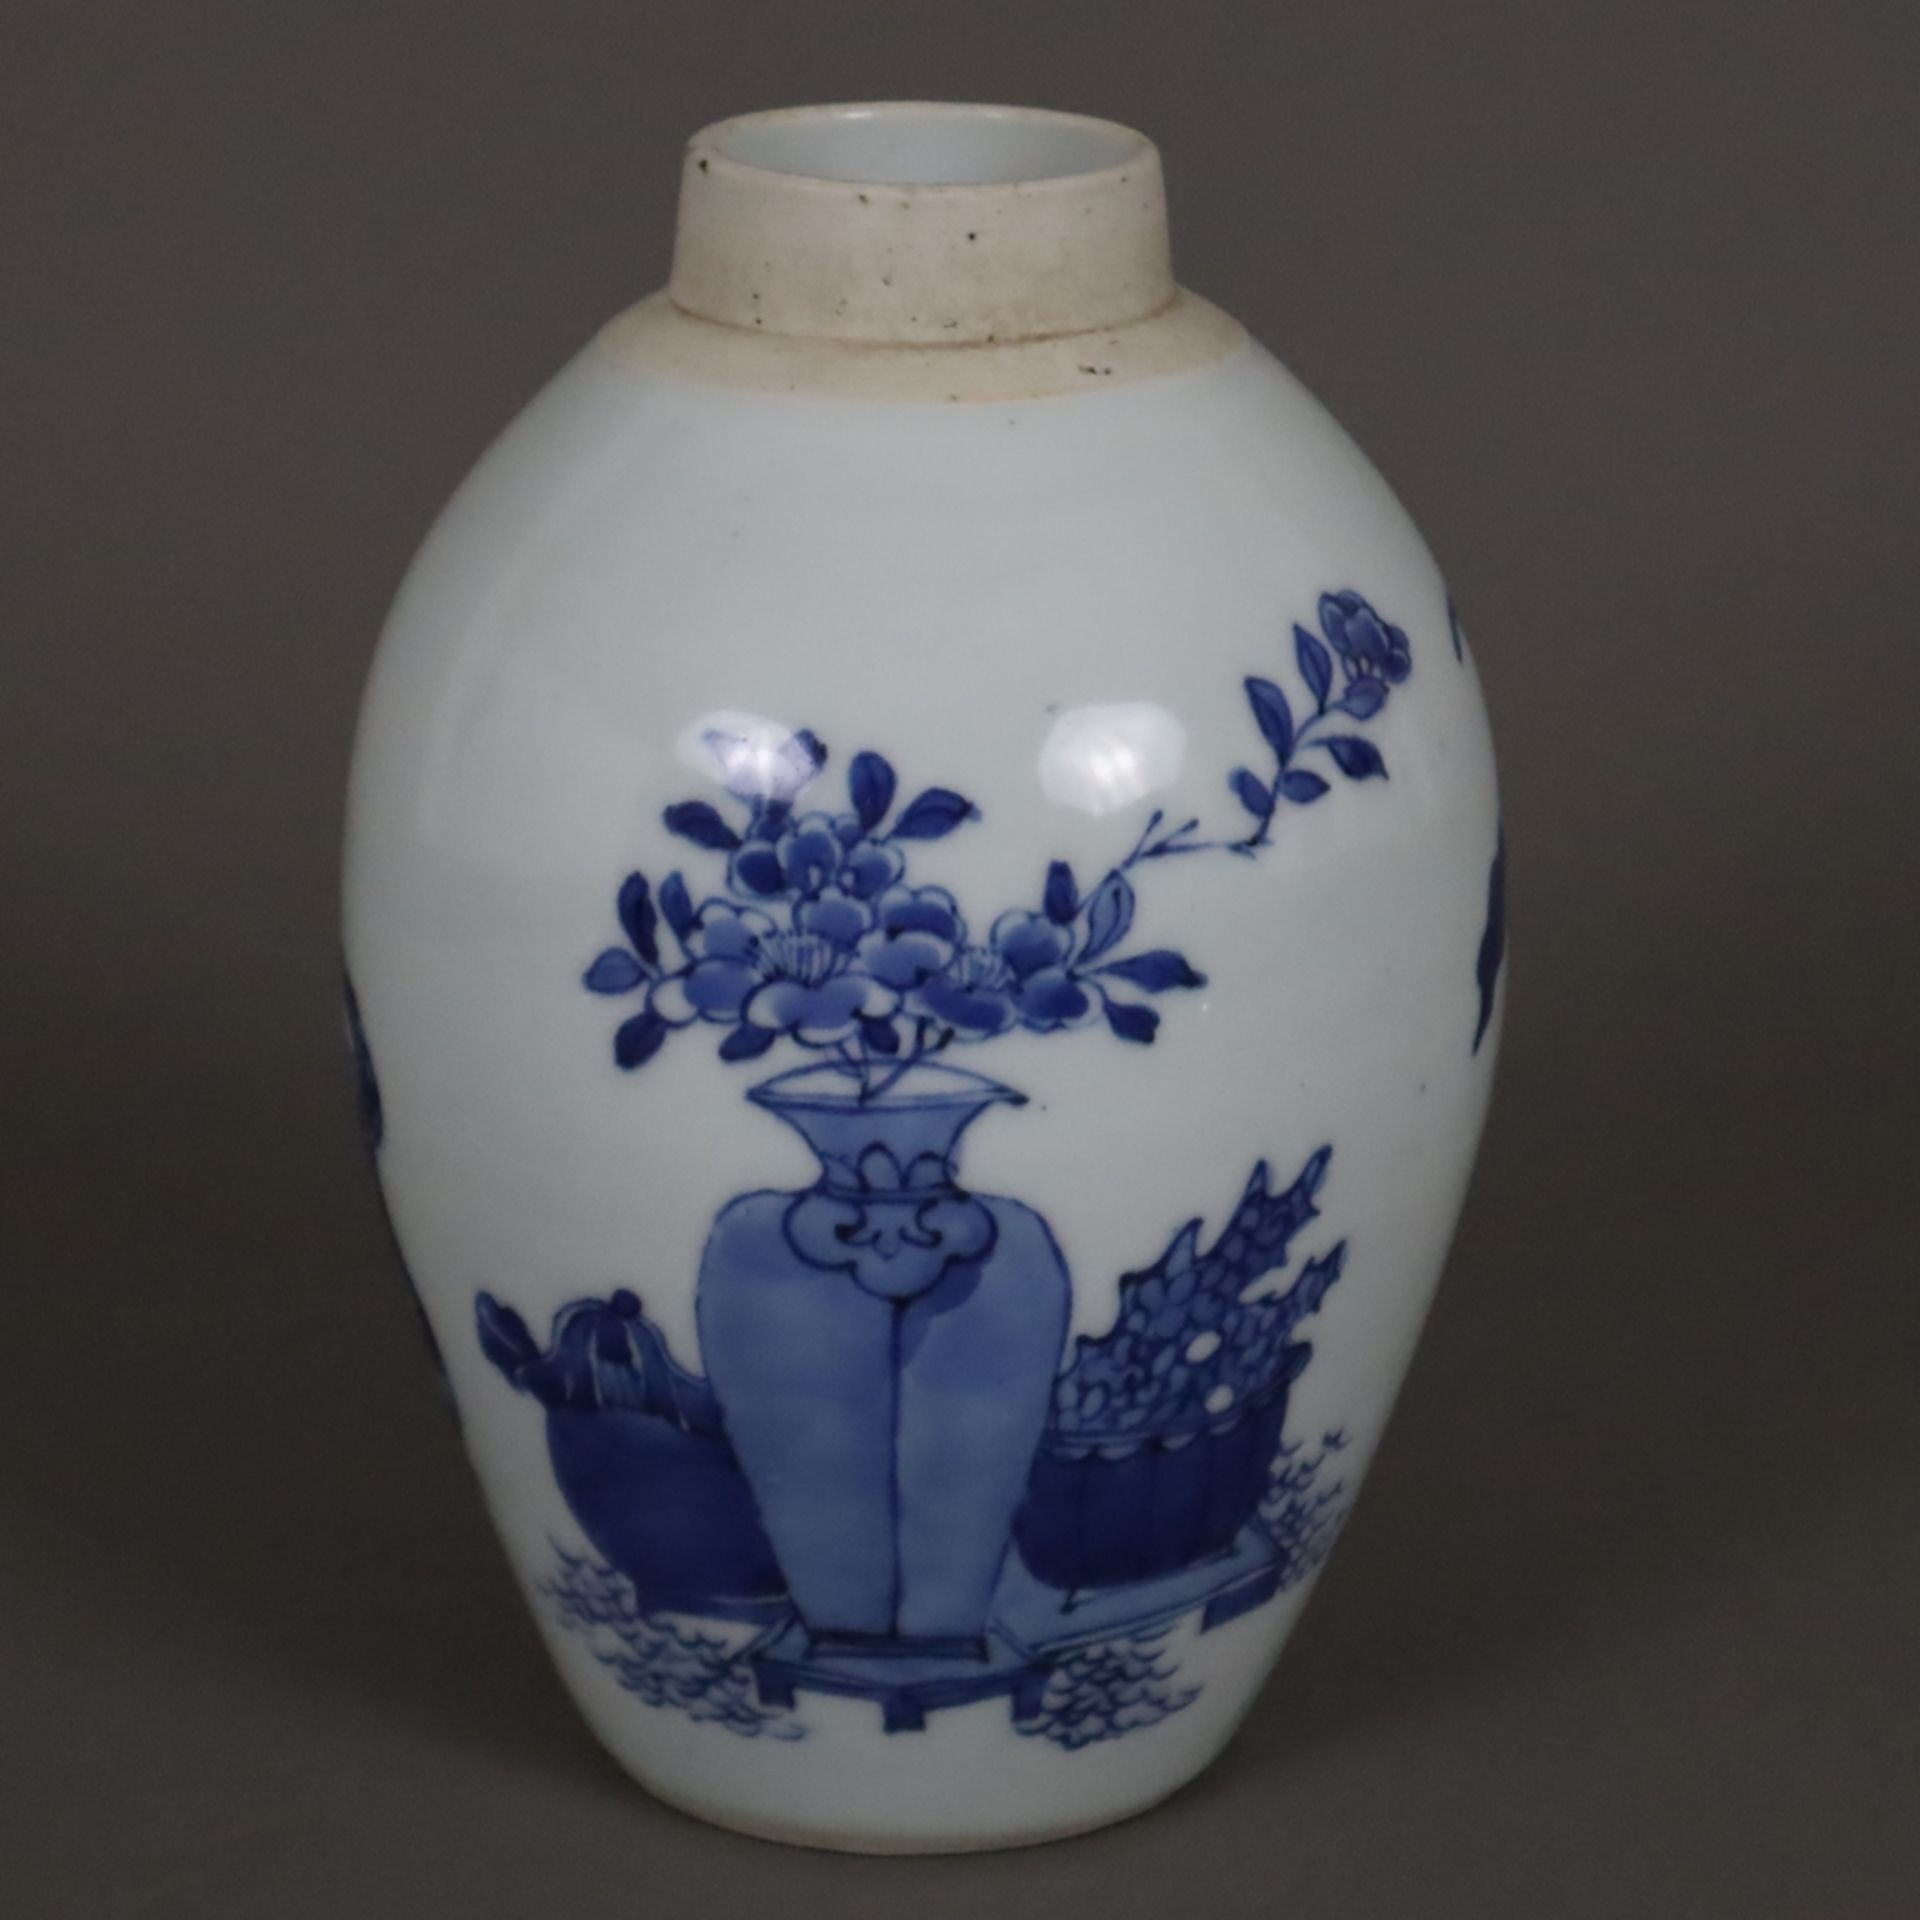 Blau-weiße Vase - China, Qing-Dynastie, Porzellan, ovoide Form, umlaufend in Unterglasurblau bemalt